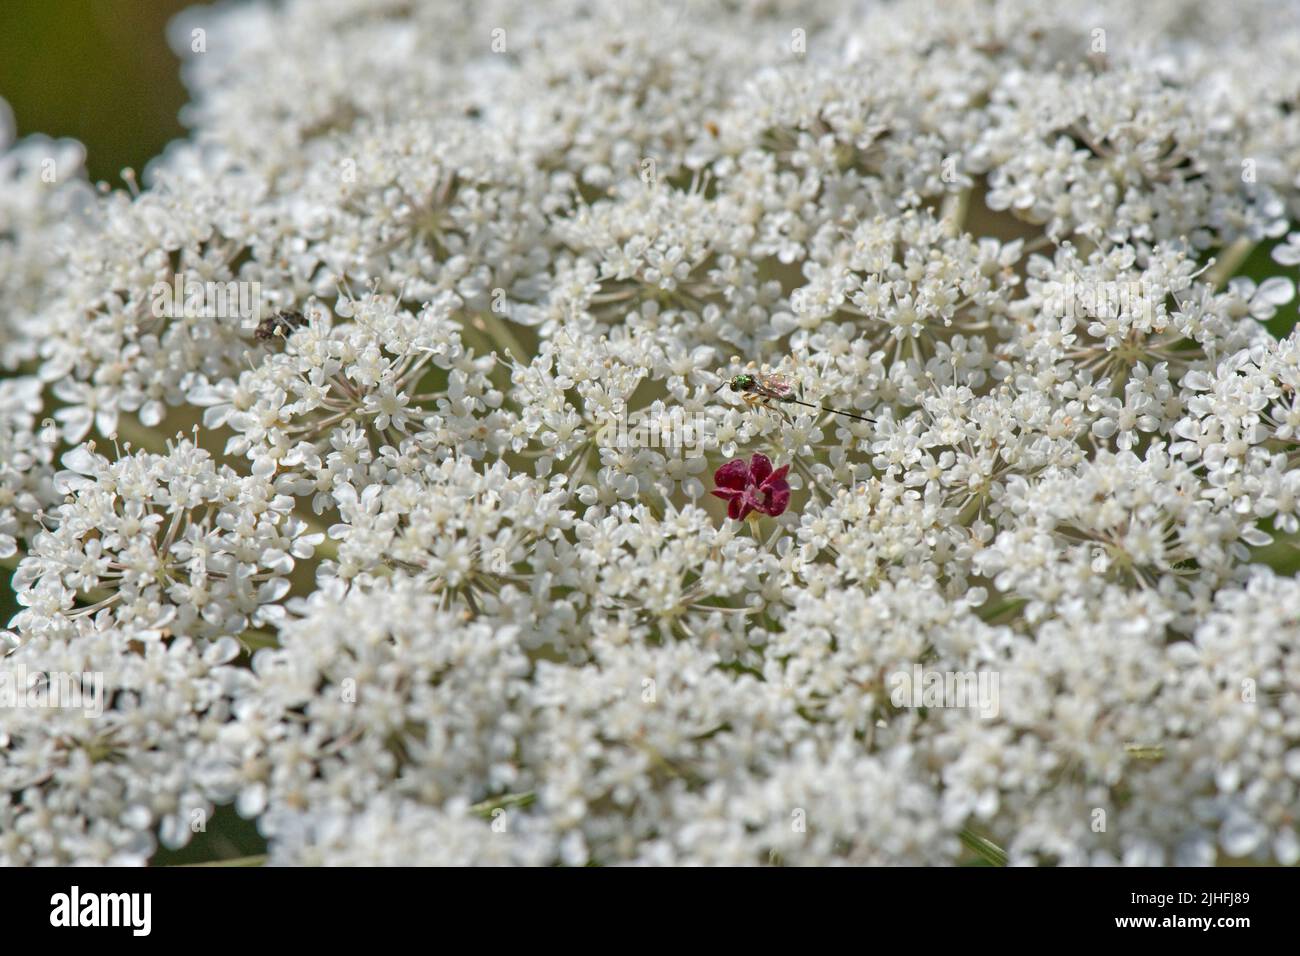 Carotte sauvage ou dentelle de la reine Anne (Daucus carota) fleurs blanches d'un ombel avec une fleur simple noire, rouge, produisant du nectar au centre, Berkshire, Ju Banque D'Images